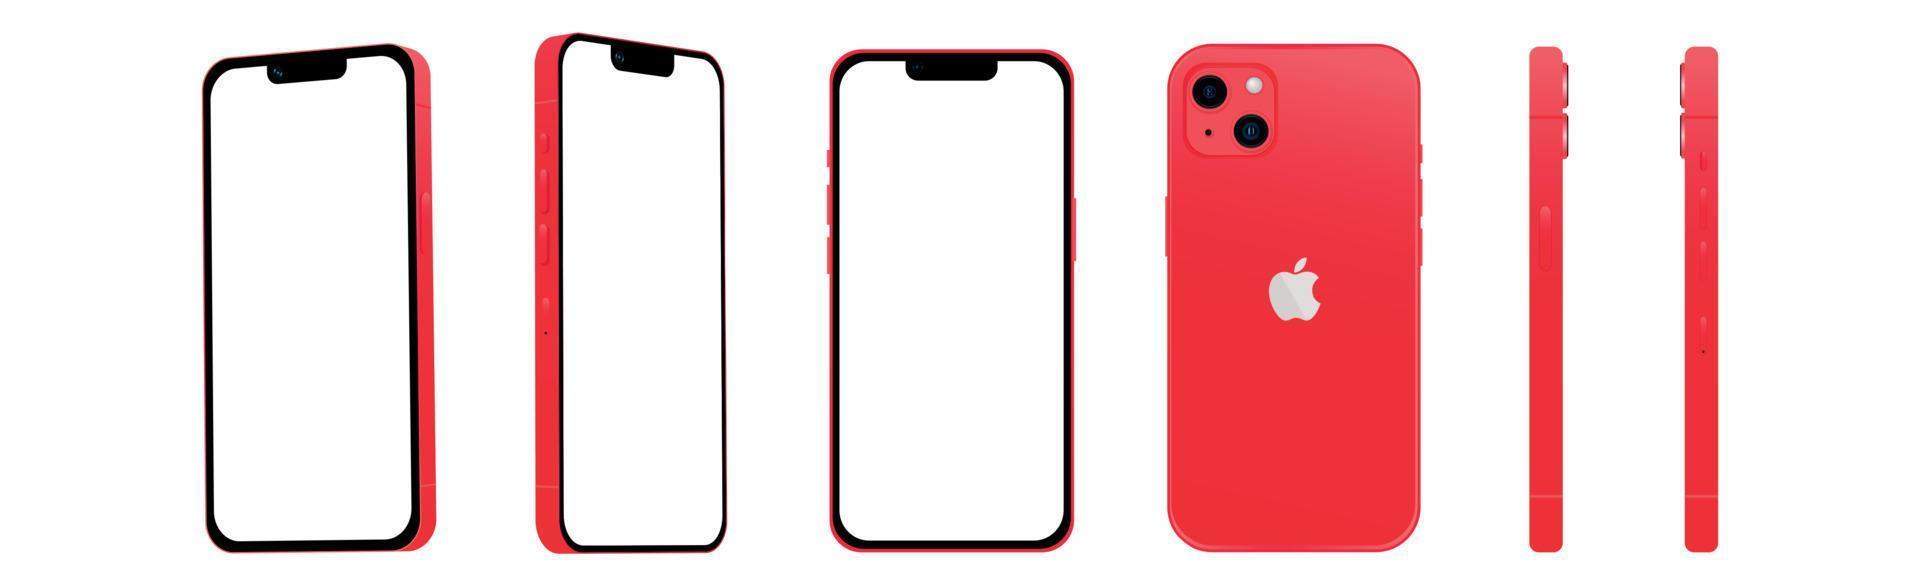 conjunto de 6 piezas de ángulos diferentes, teléfono inteligente rojo modelo apple iphone 14, novedad de la industria de ti, maqueta para diseño web sobre un fondo blanco - vector